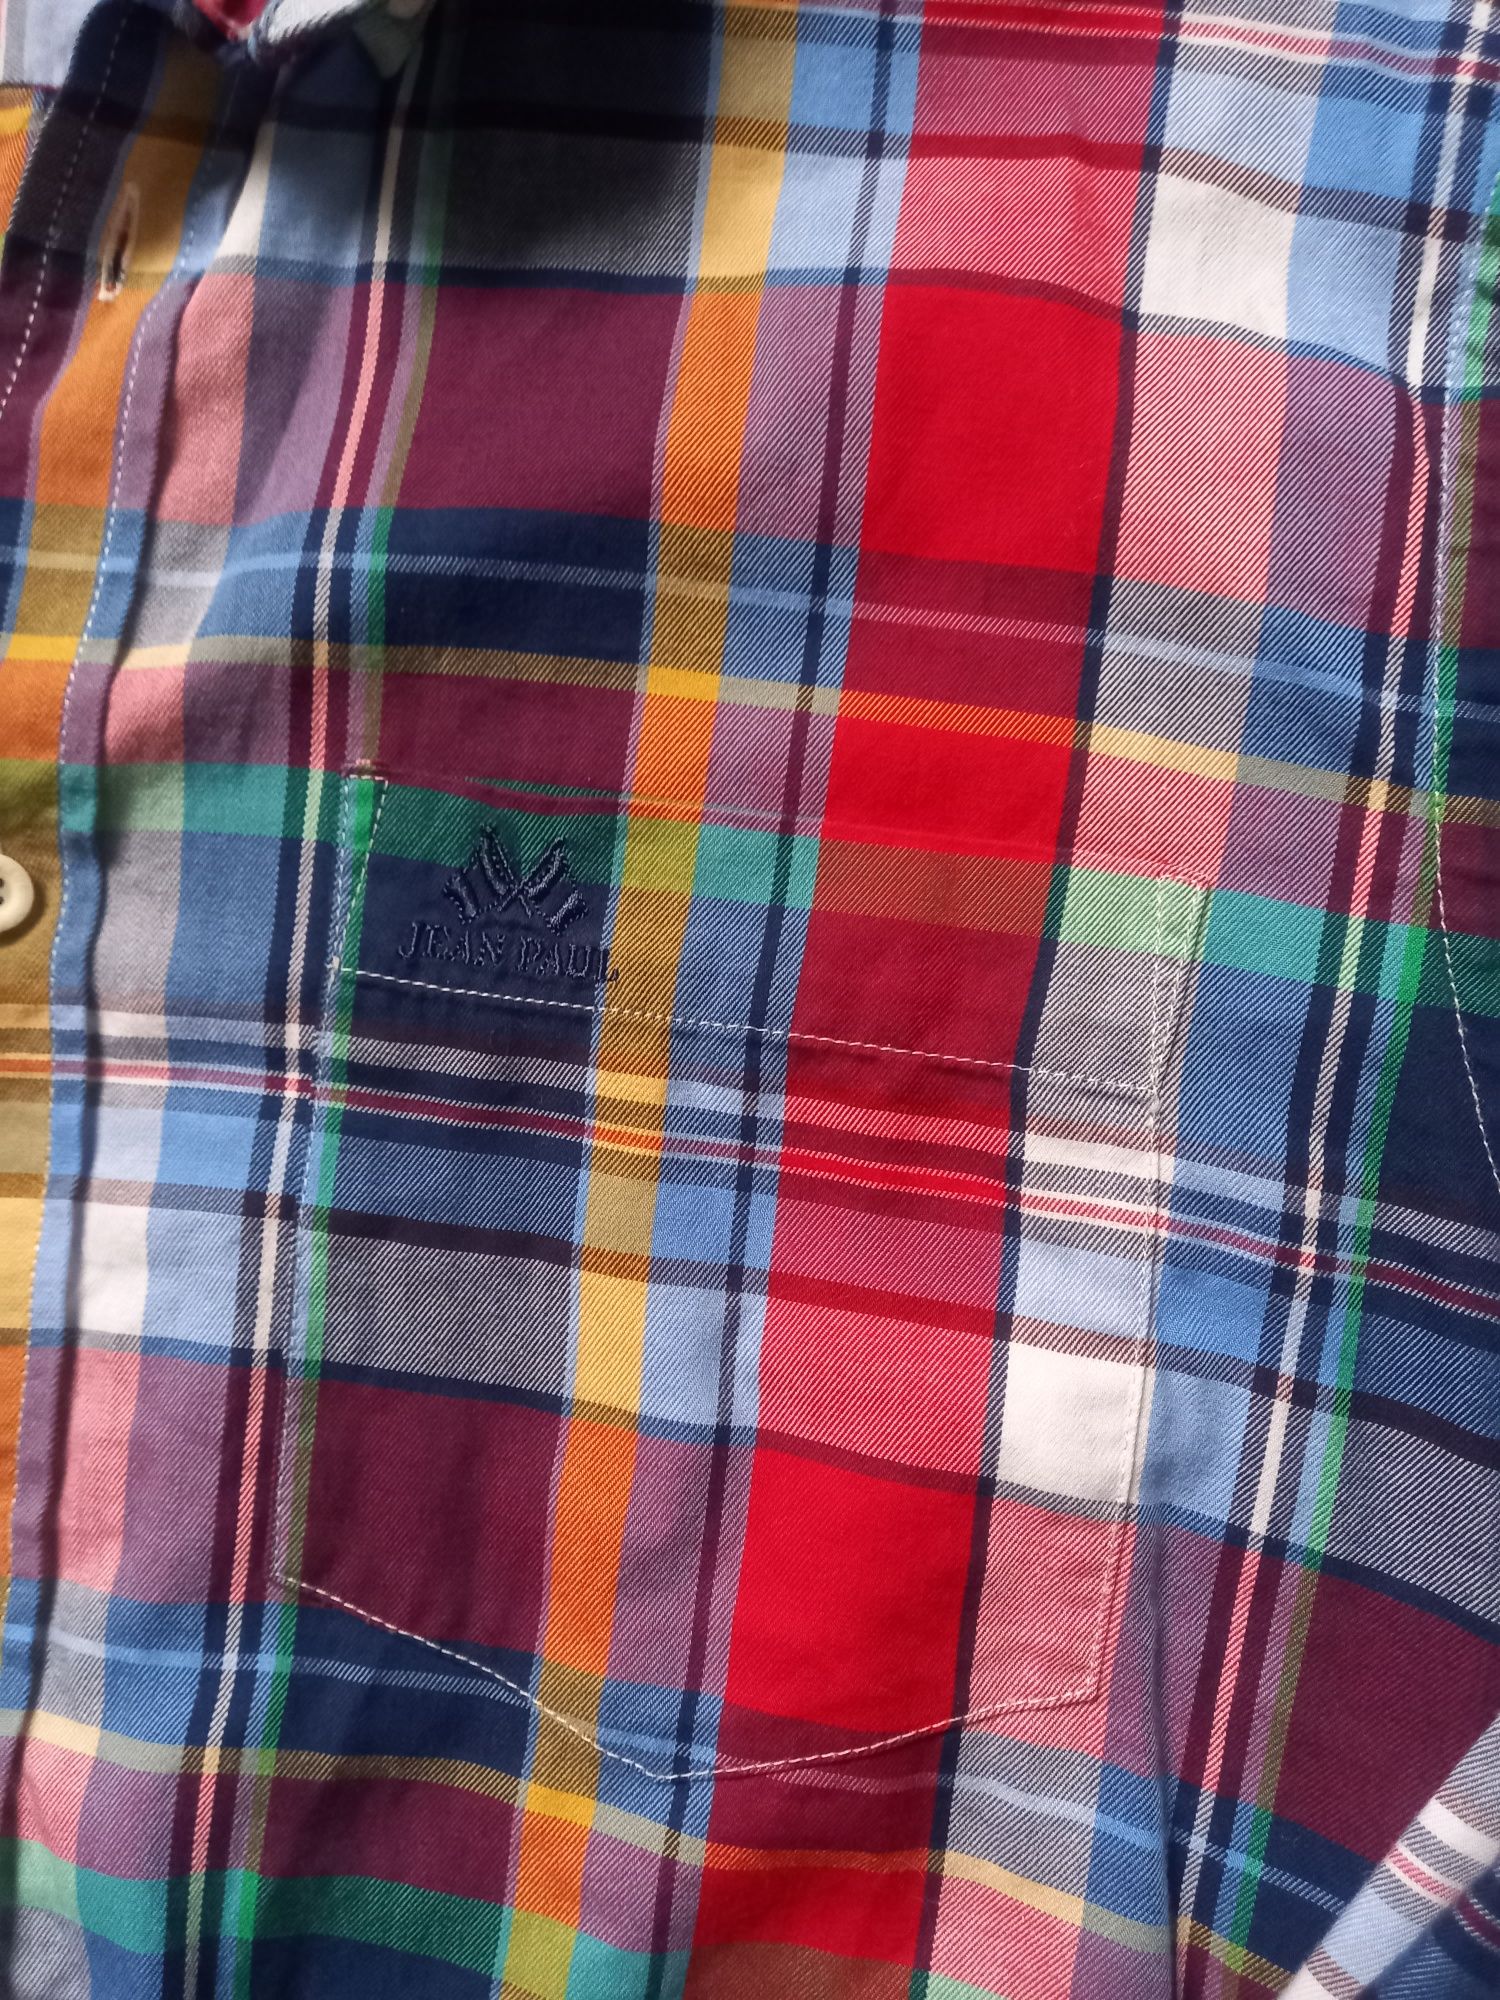 Koszula męska kratka Jean Paul roz M roz 38 bawełna